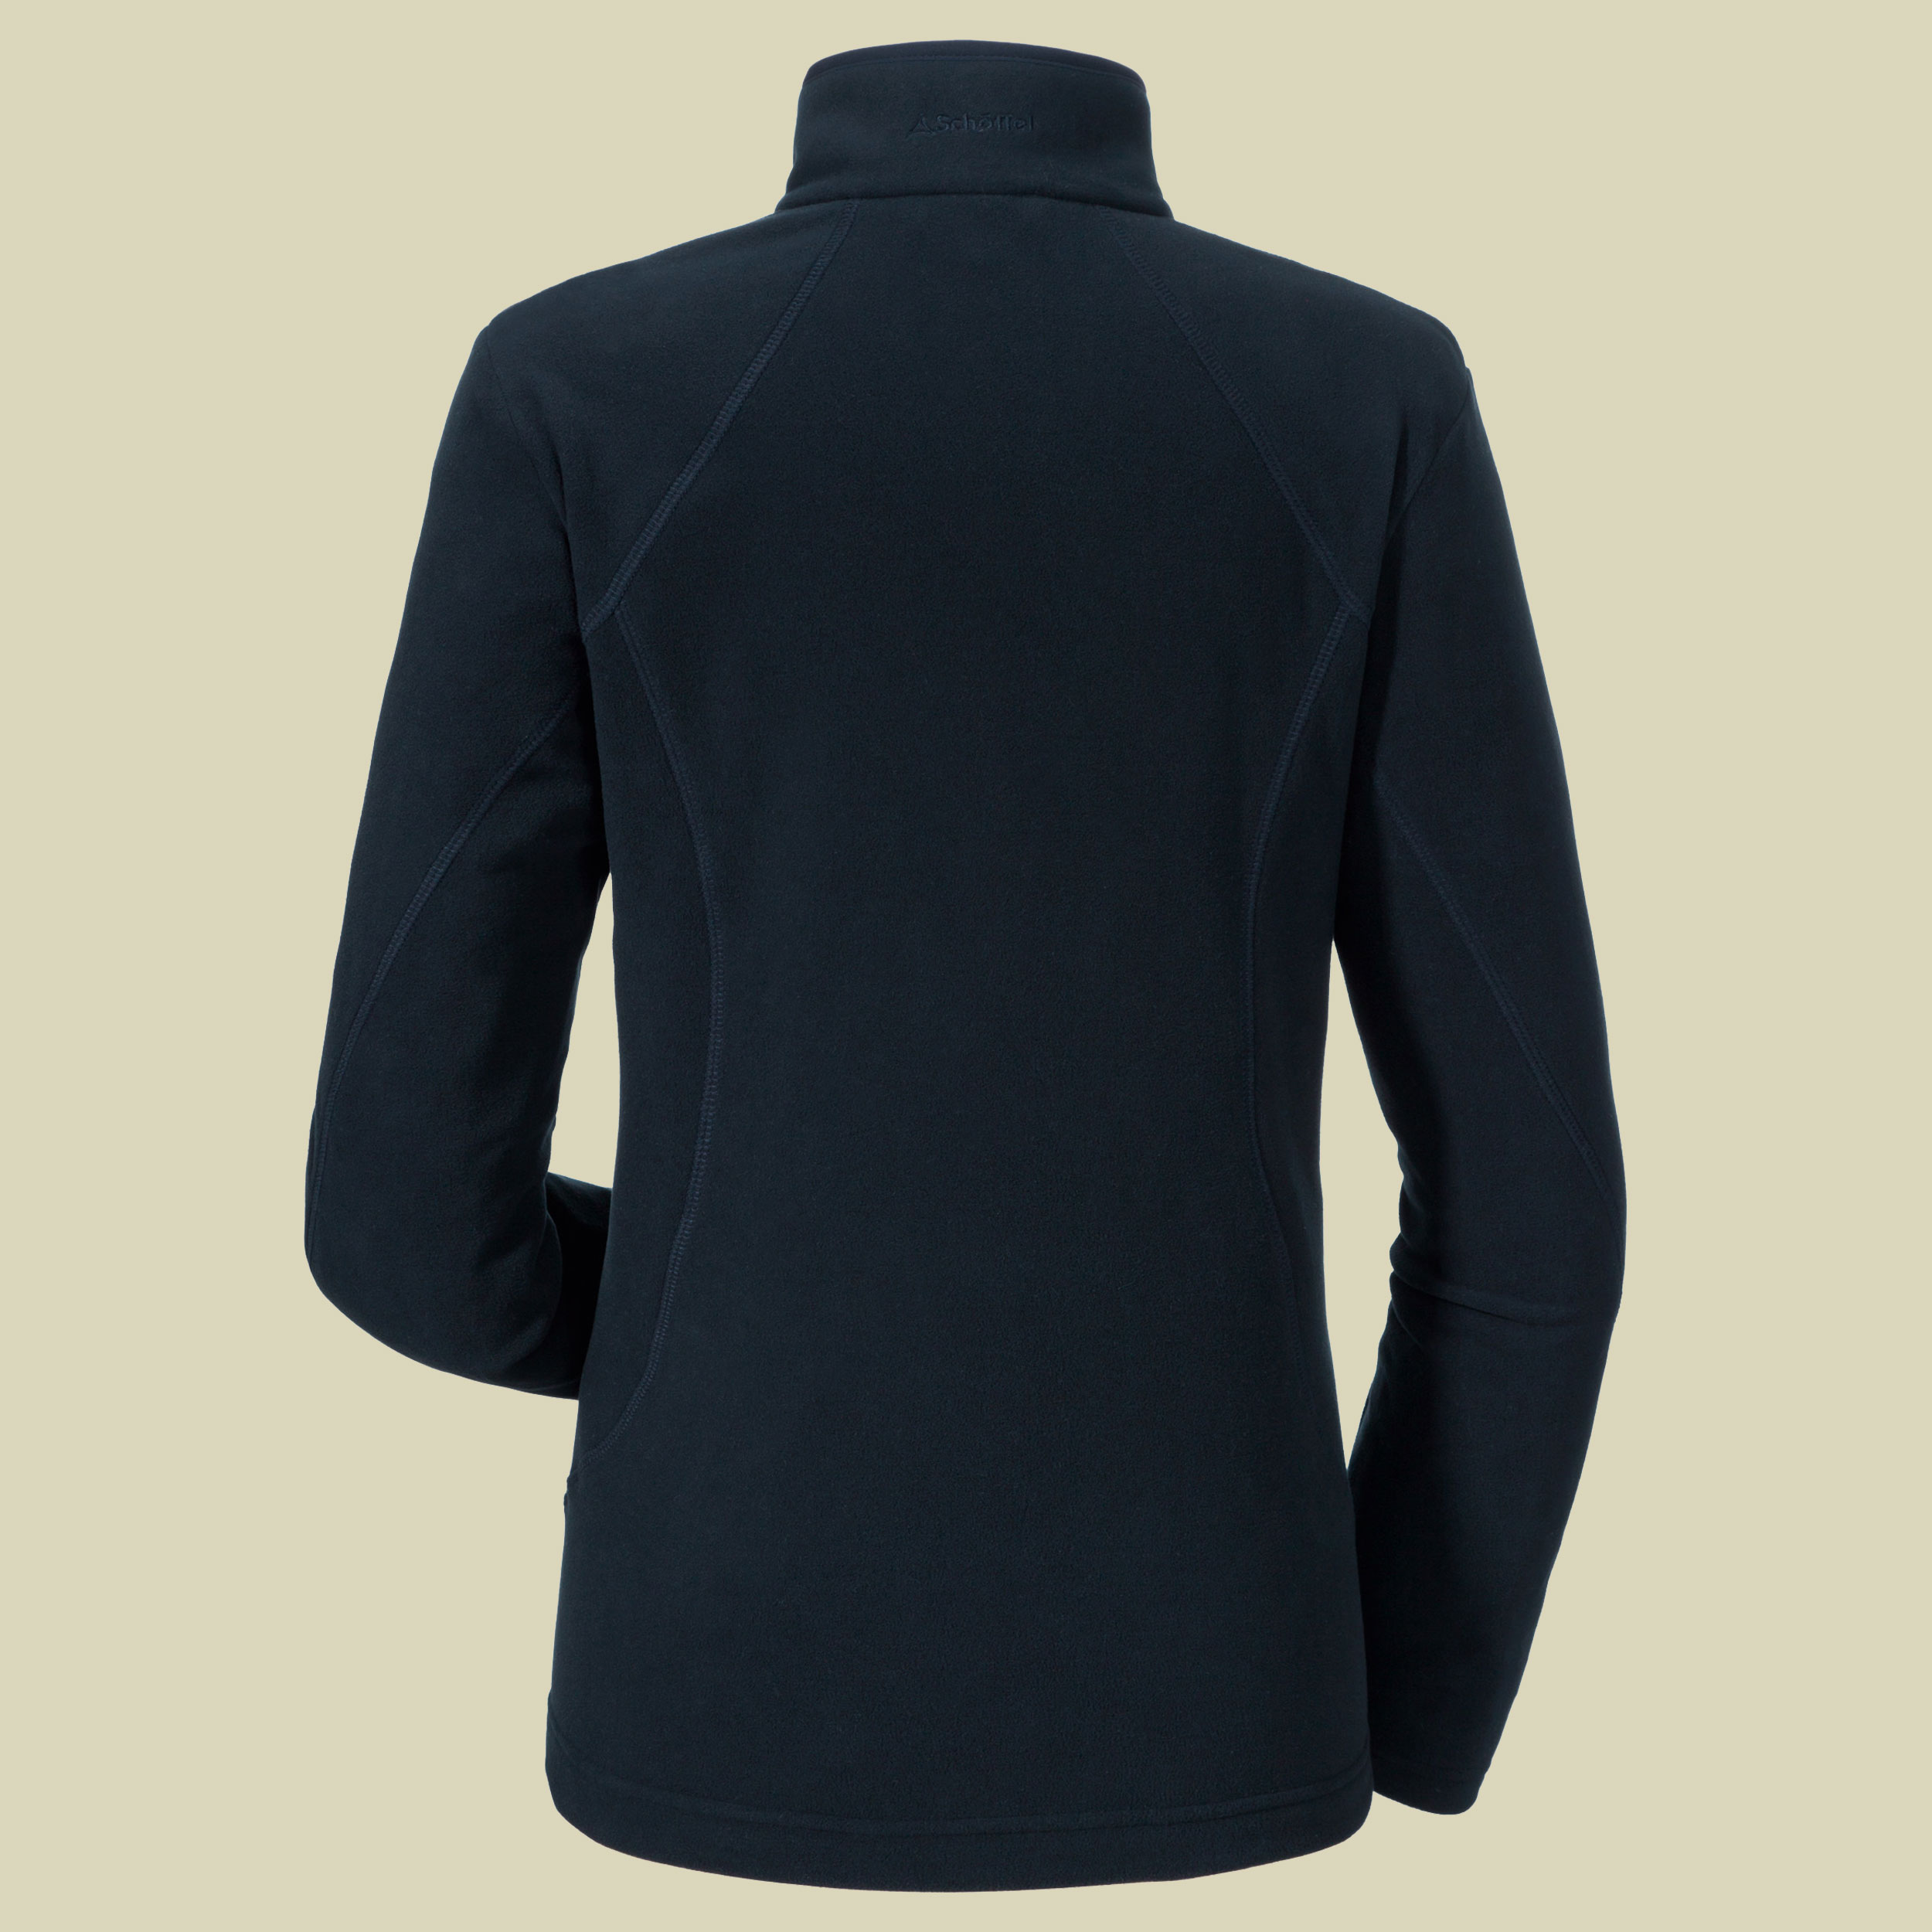 Fleece Jacket Leona2 Women Größe 42 Farbe night blue